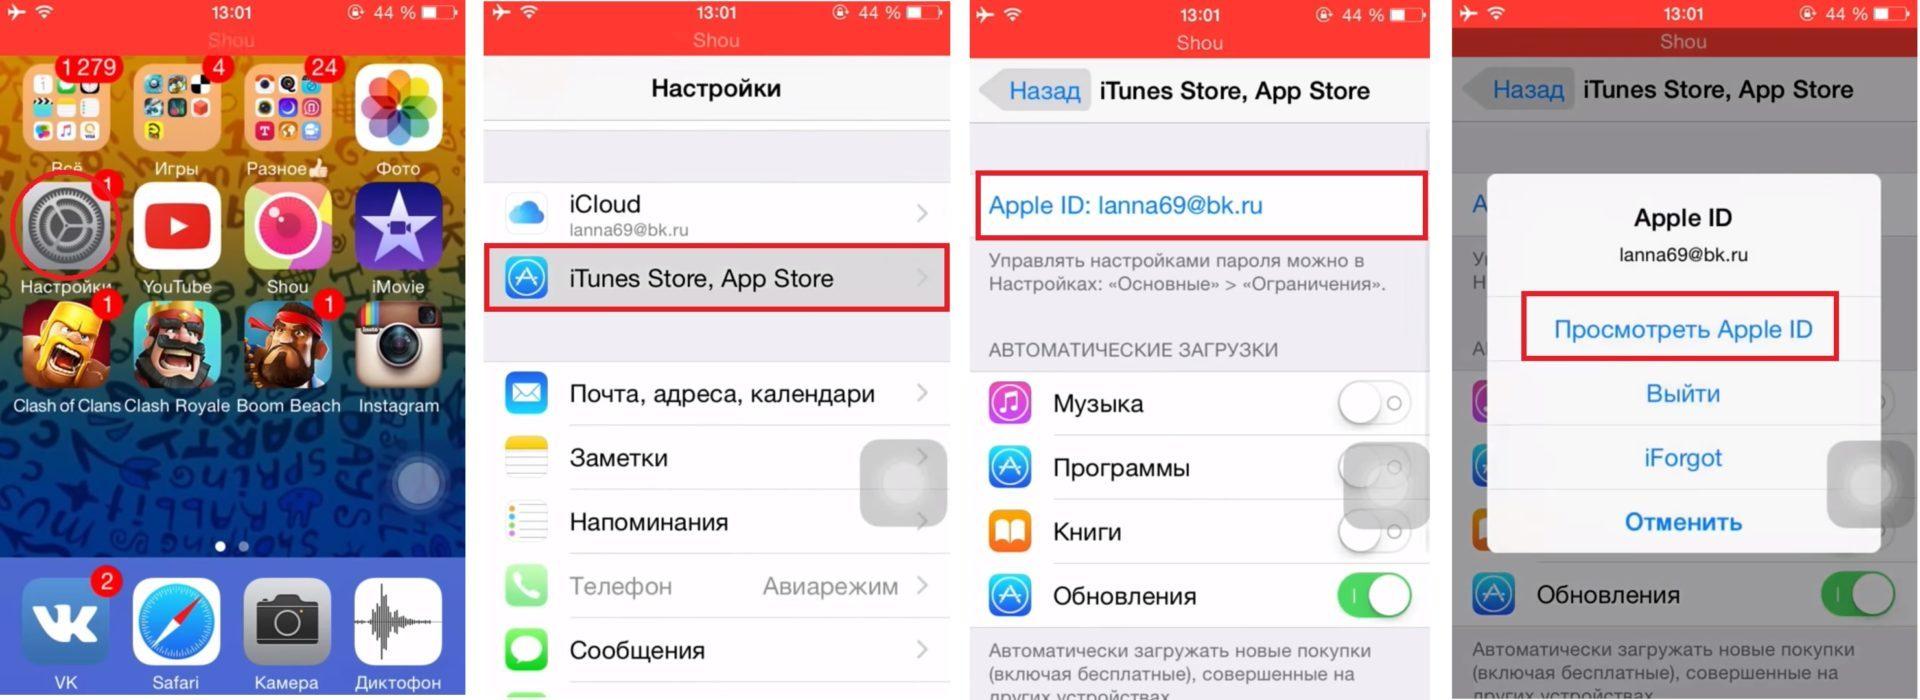 Как в телеграмме перевести на русский язык на телефоне айфон фото 103